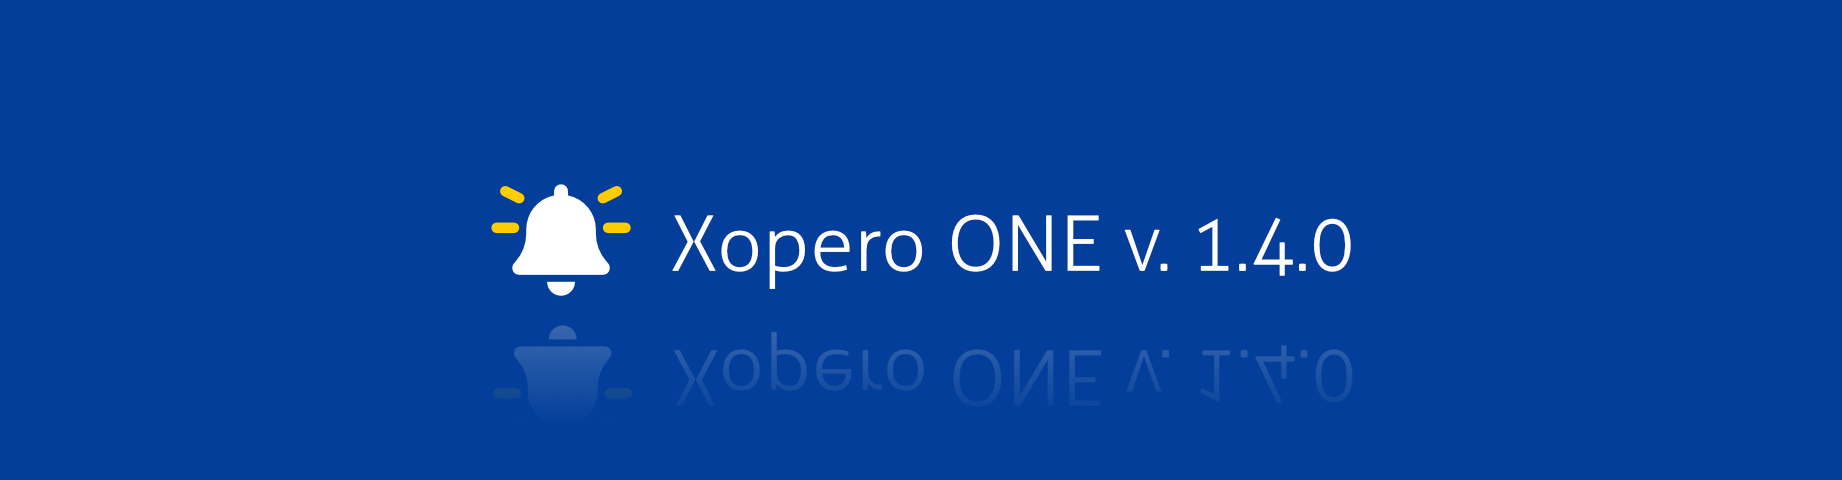 Нова версія Xopero ONE 1.4.0 вже доступна користувачам – надійне рішення для резервного копіювання та відновлення корпоративних даних.